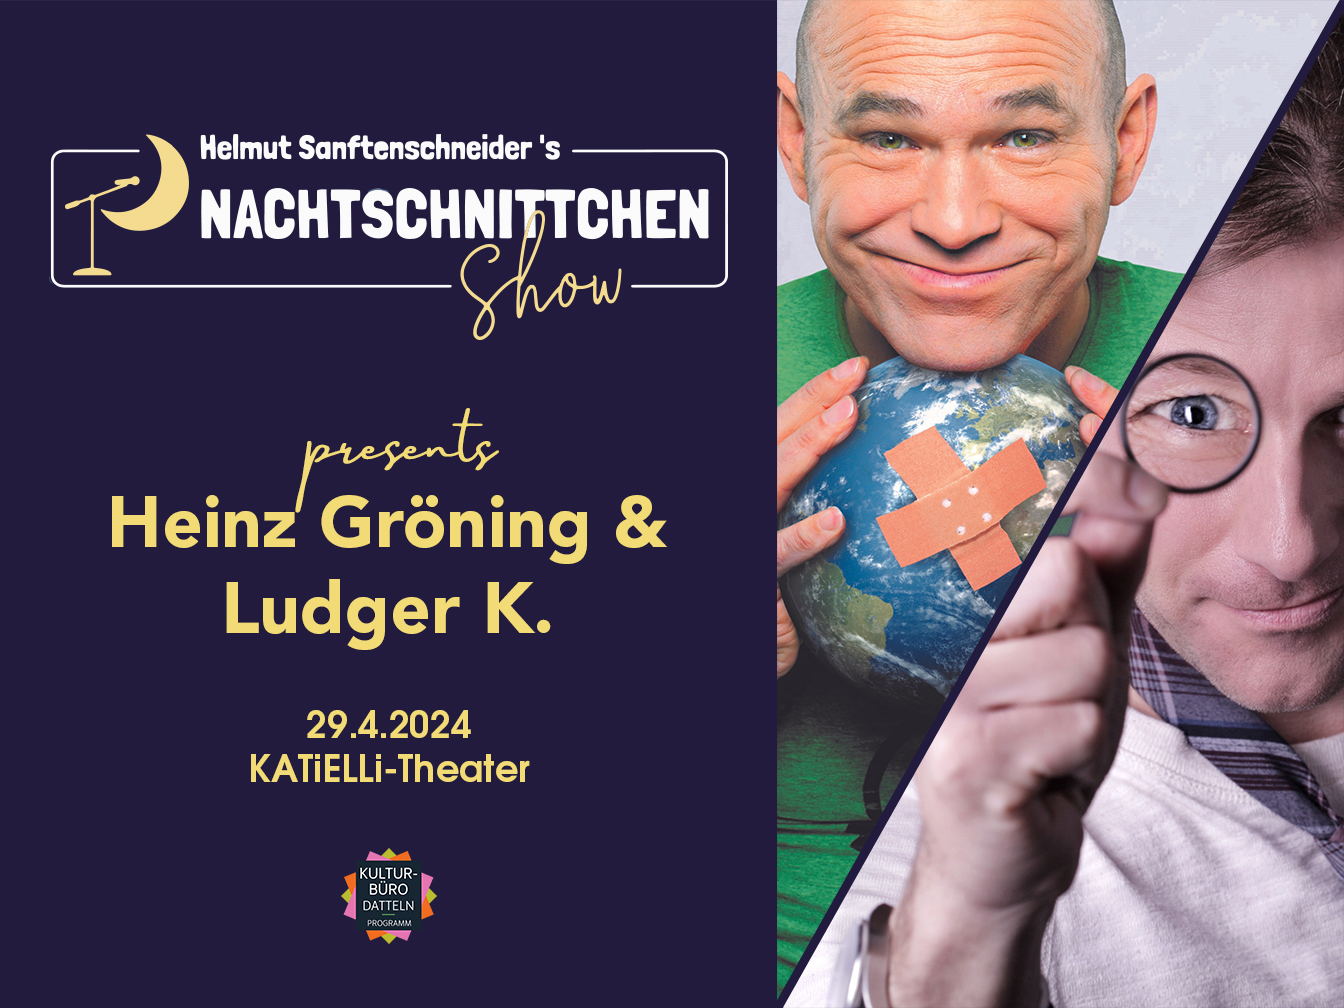 Infobild zur Veranstaltung mit dem NachtSchnittchen-Logo und den Künstlern Heinz Gröning und Ludger K.